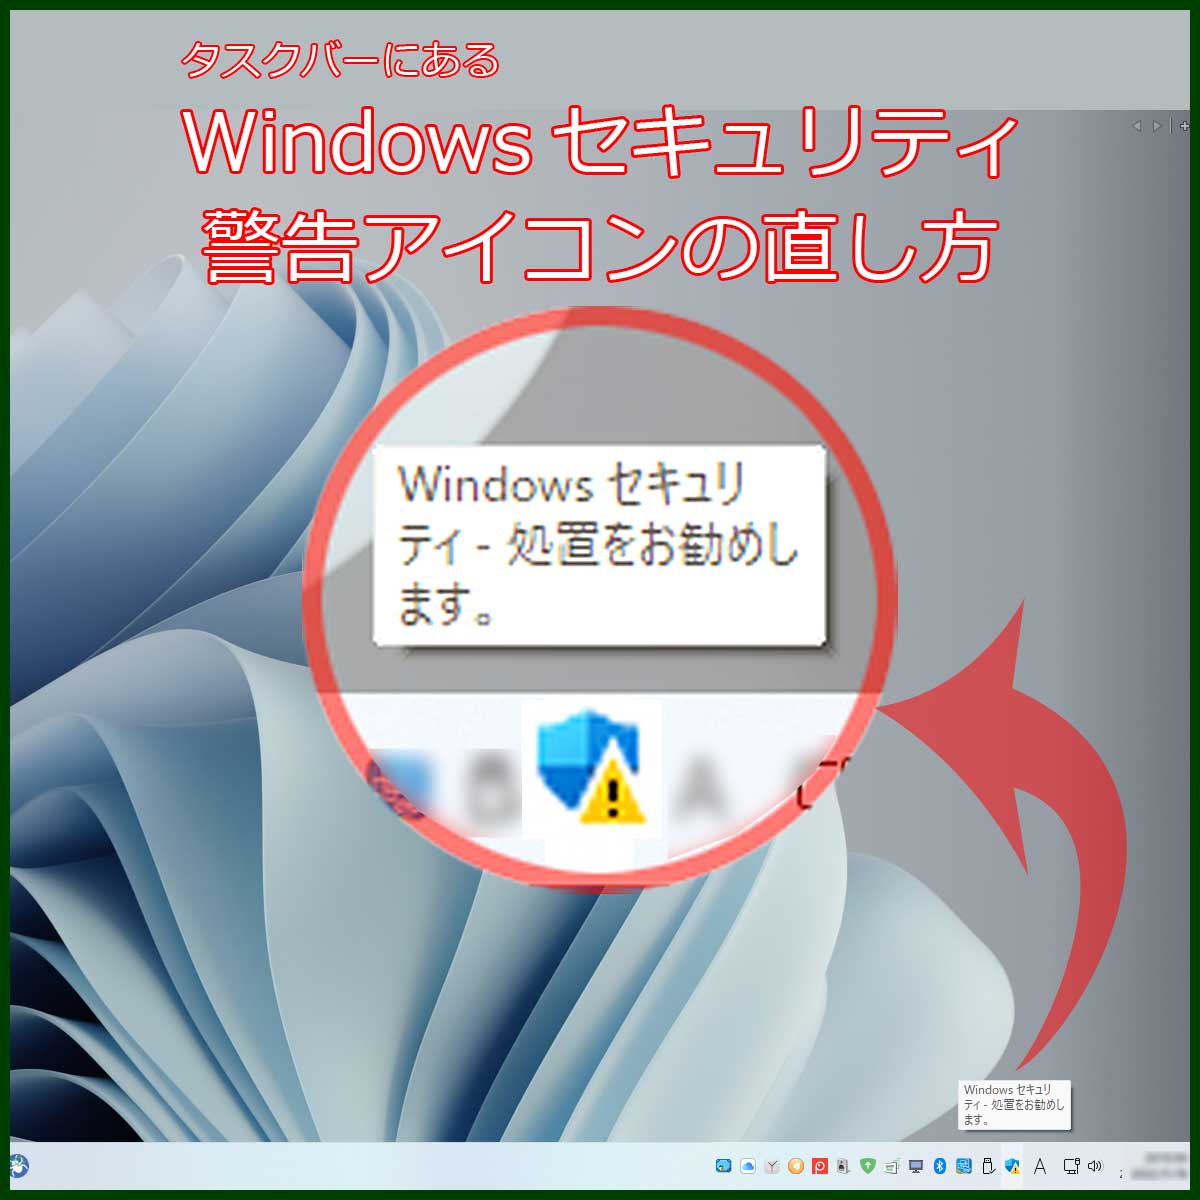 Windowsセキュリティー アイコン 警告表示